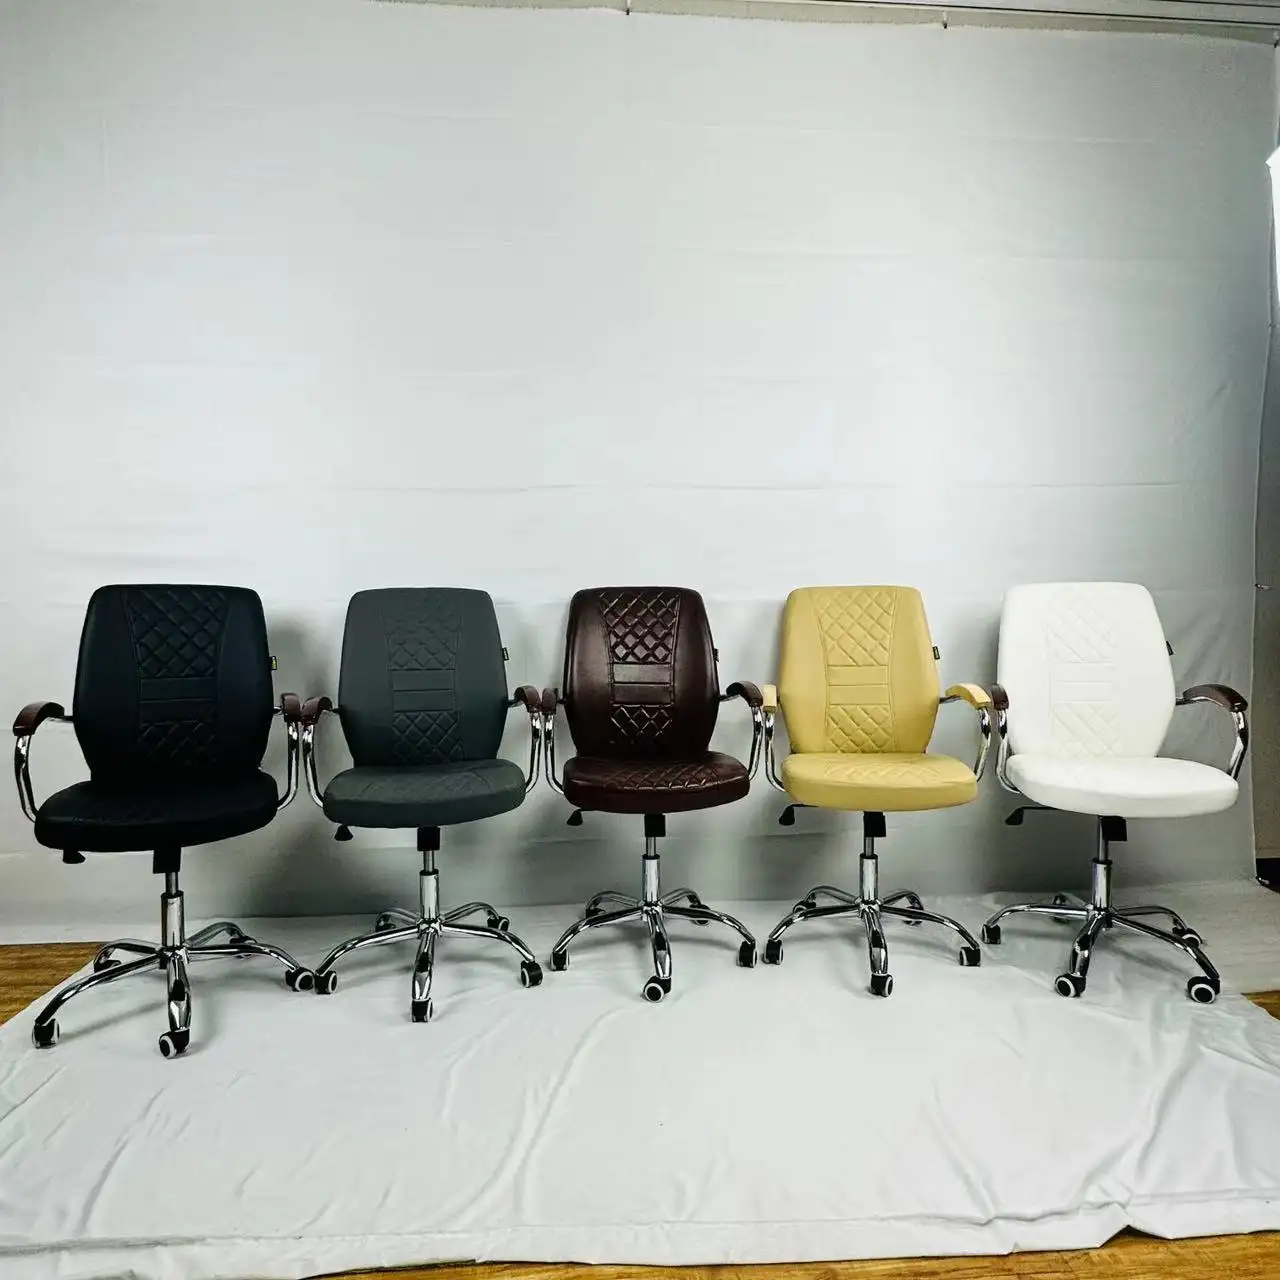 Personalizable Manual ajustable respaldo giratorio de cuero suave jefe silla de oficina familia e-sports juego silla barata silla giratoria